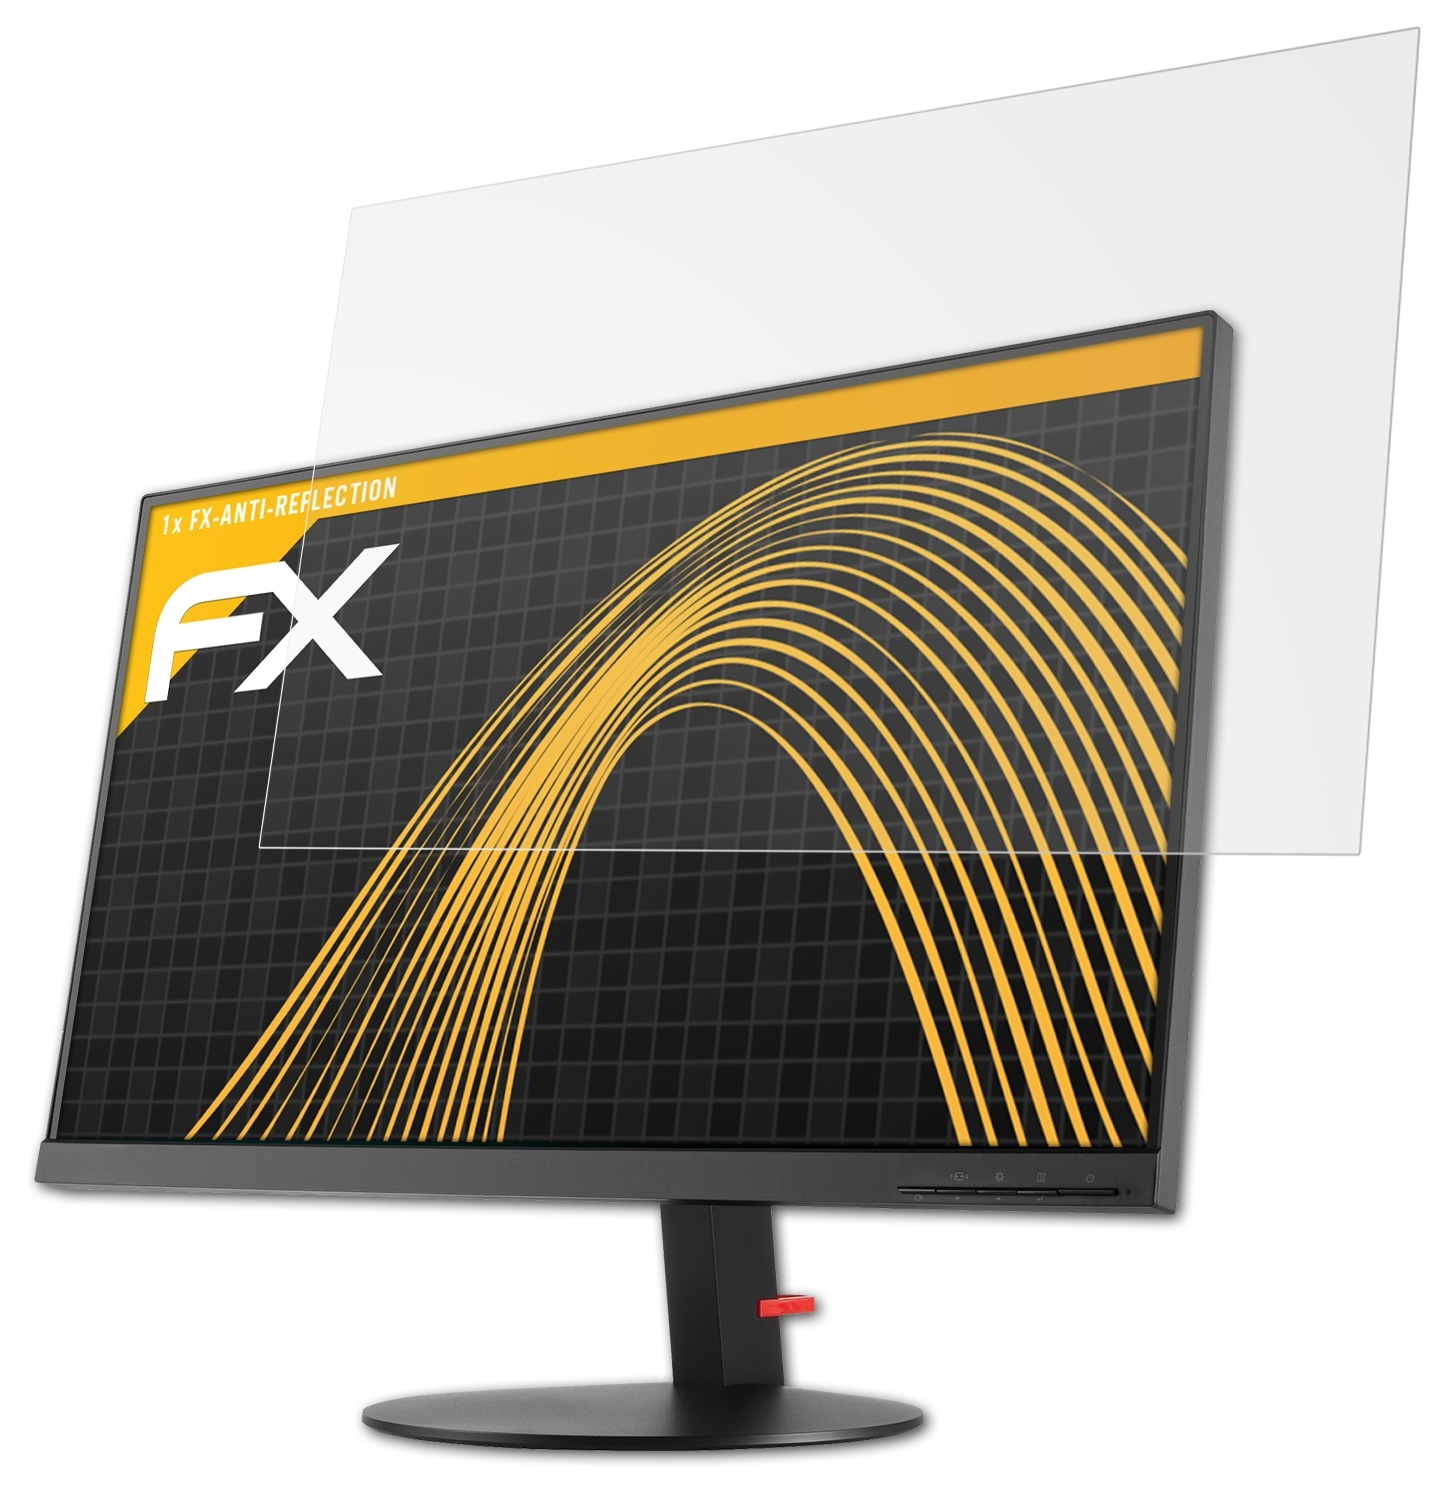 ATFOLIX P27h-10) Displayschutz(für FX-Antireflex ThinkVision Lenovo